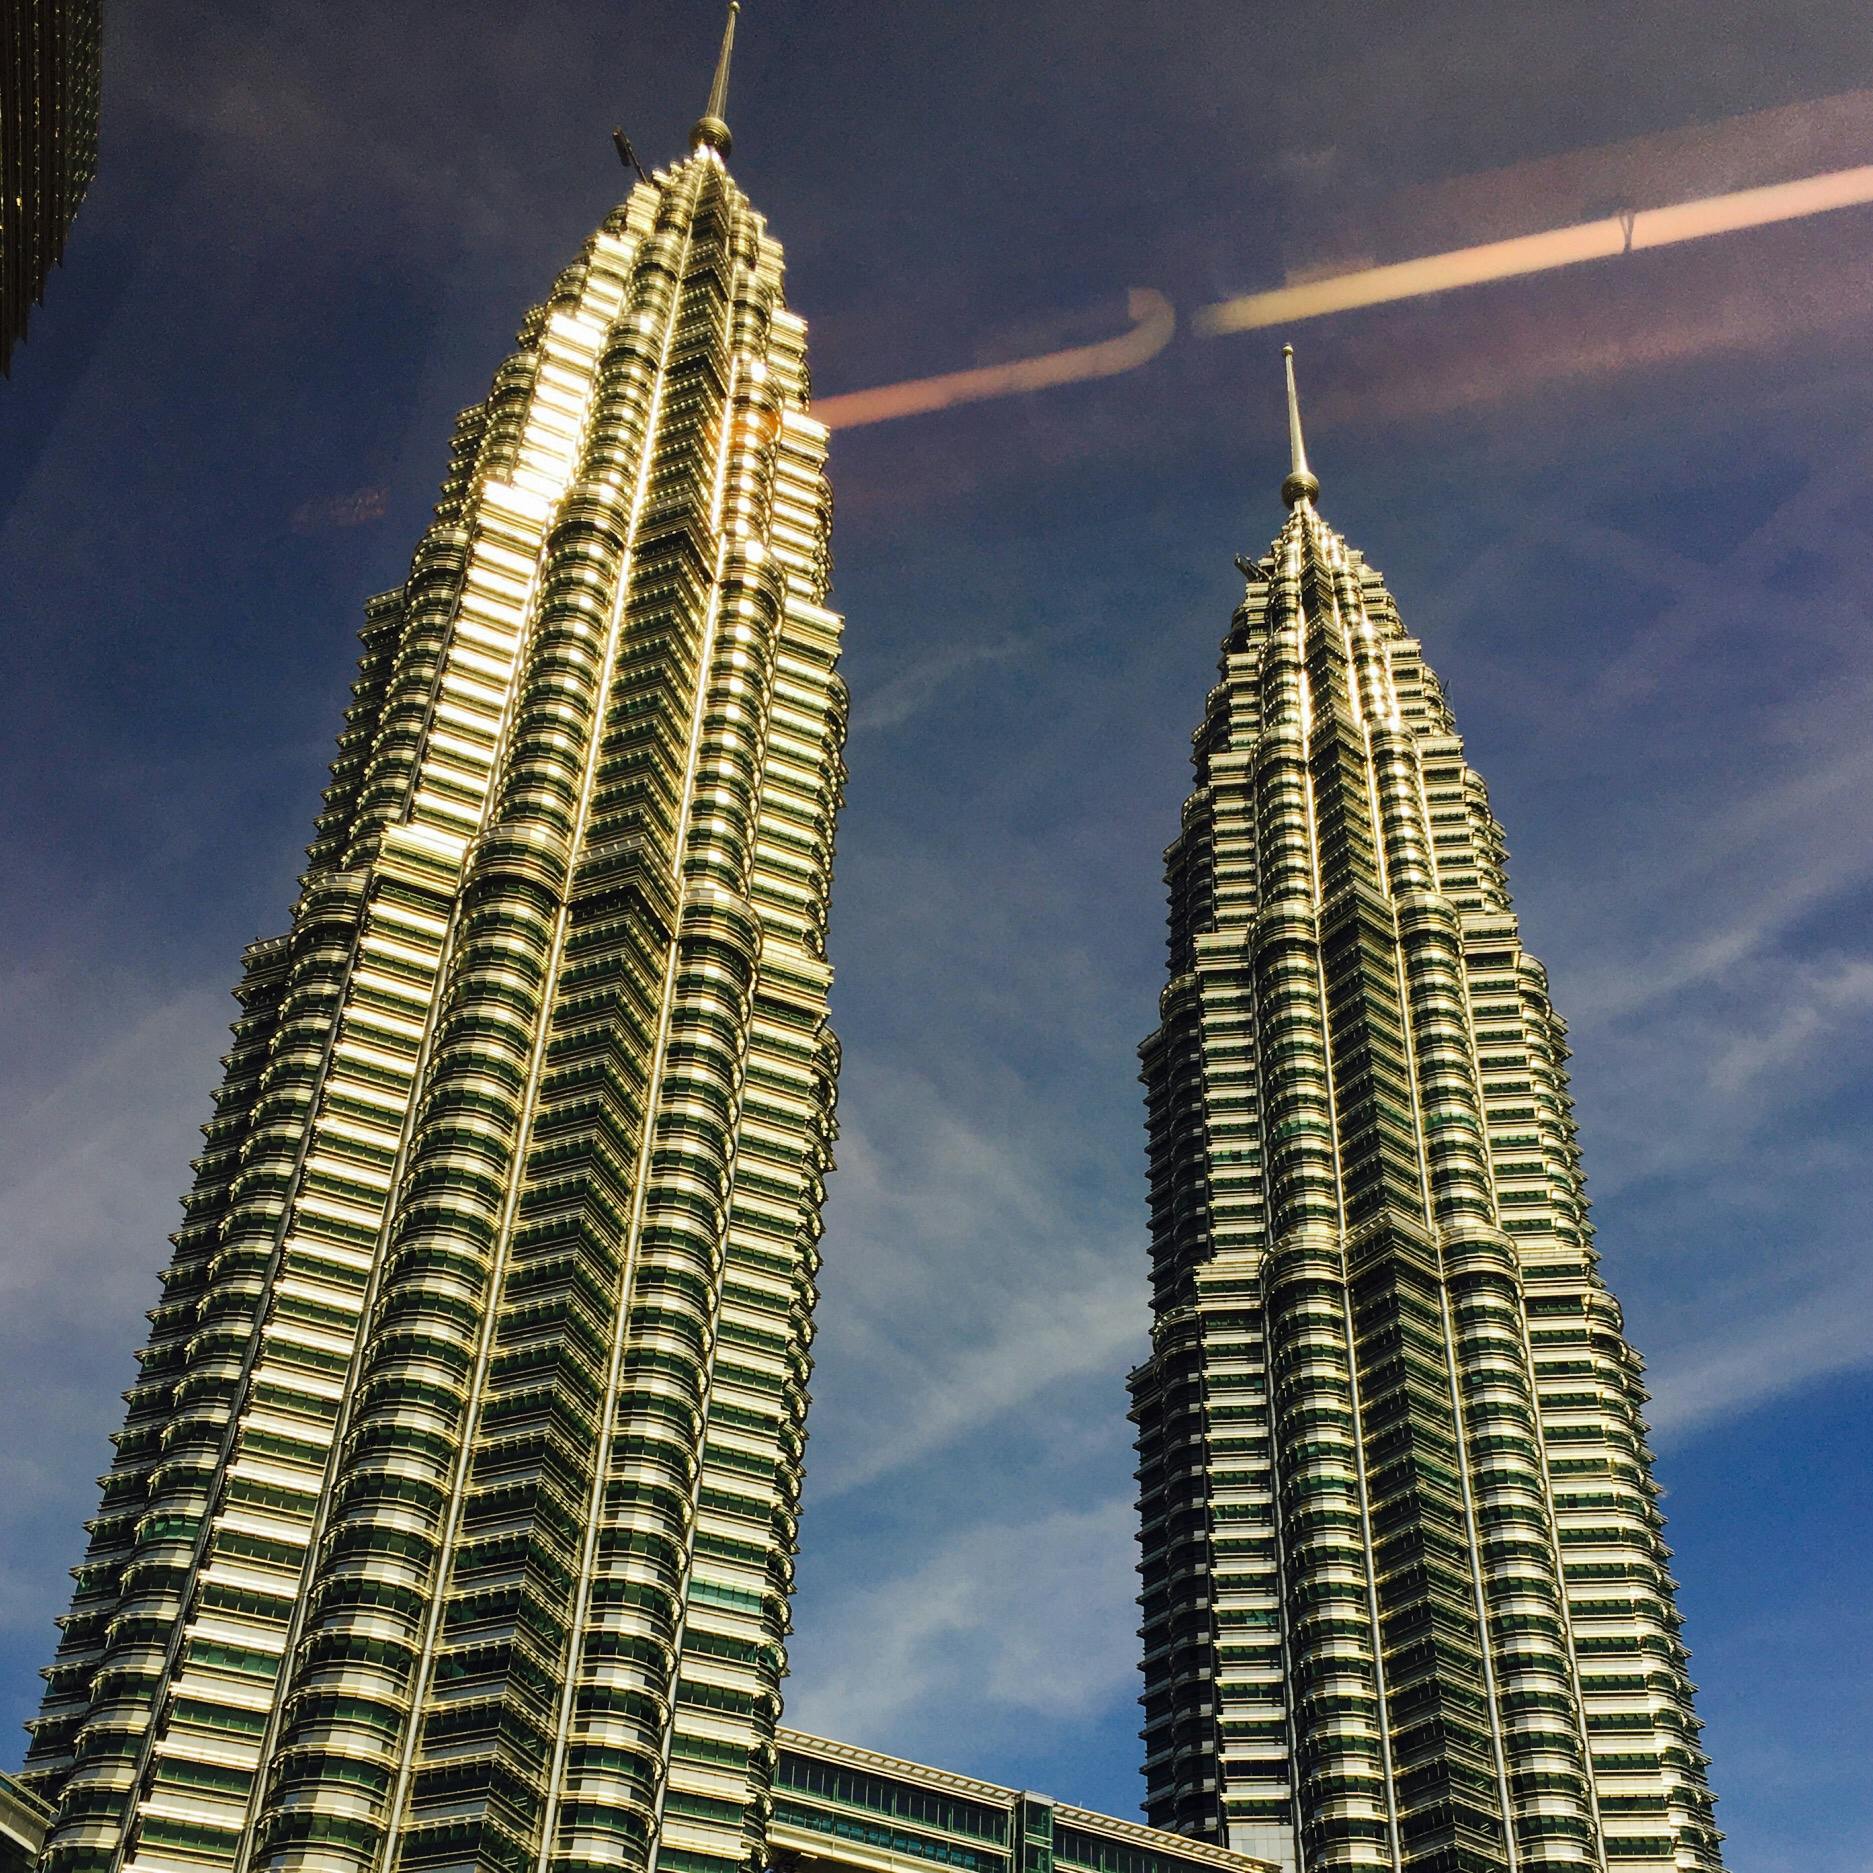 ペトロナス ツインタワー Petronas Twin Tower の投稿写真 感想 みどころ マレーシア ホテルから見えるペトロナスツインタワー トリップノート